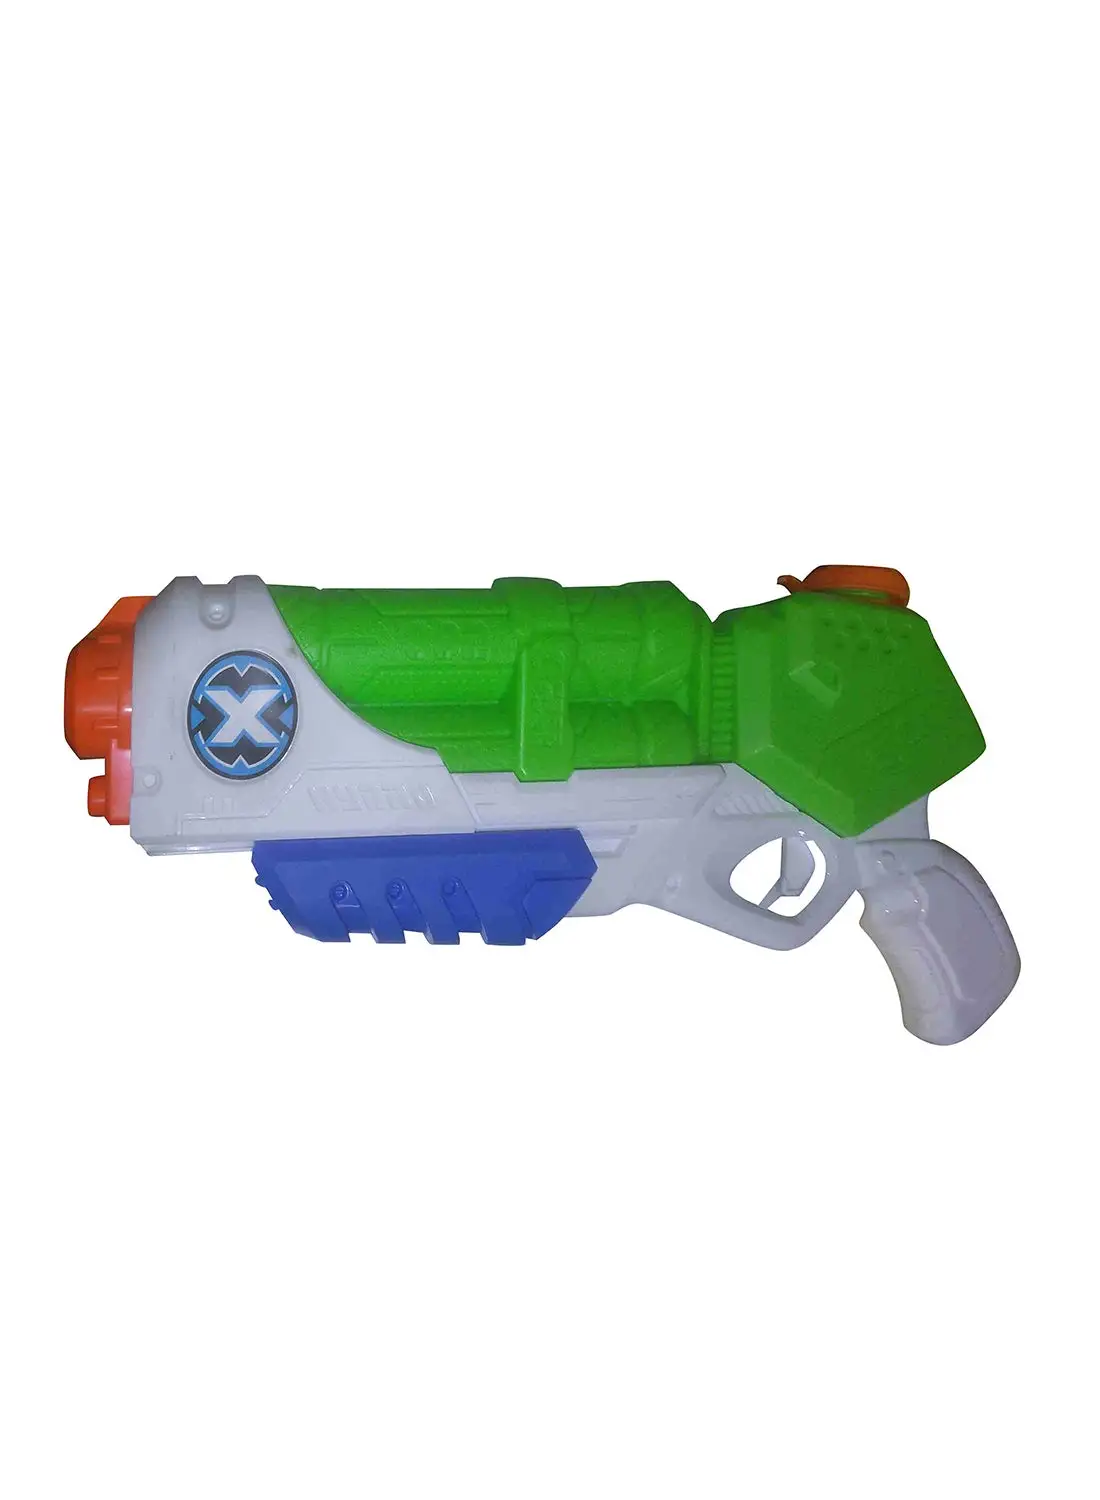 Zuru X-Shot Water Blaster Toy - Assorted